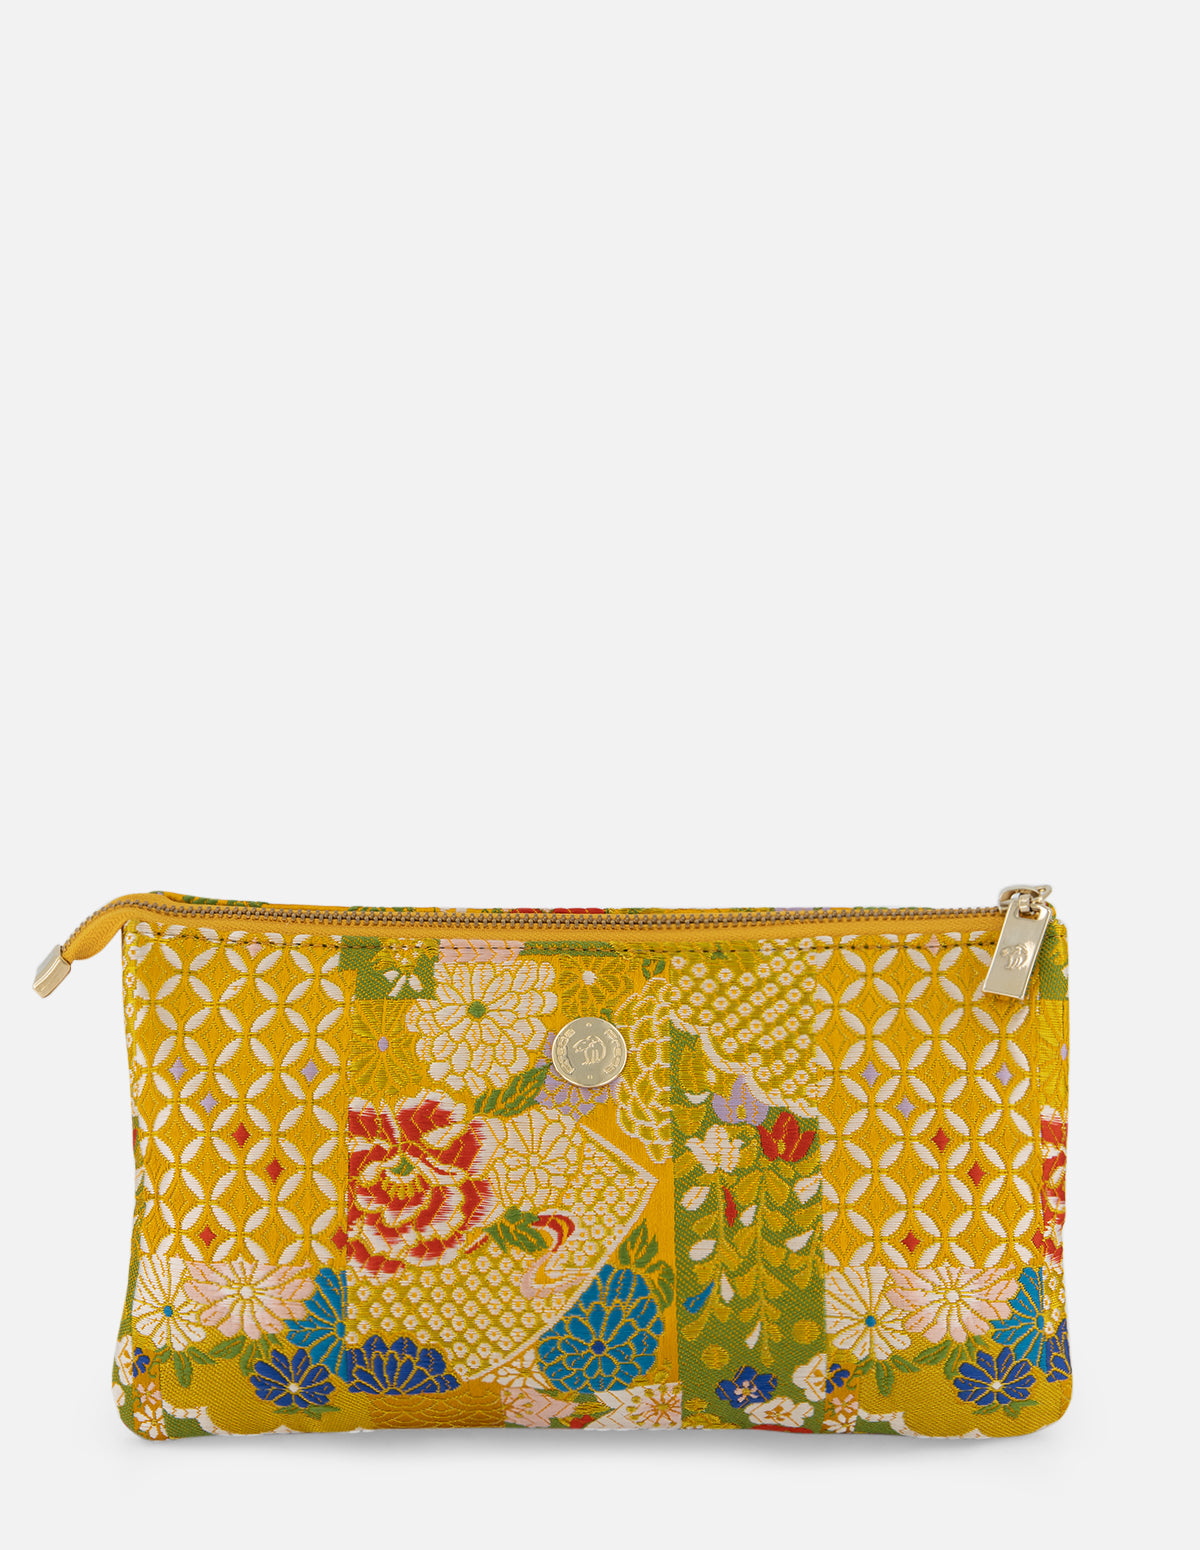 Bandolera en textil con diseño oriental en color amarillo para mujer